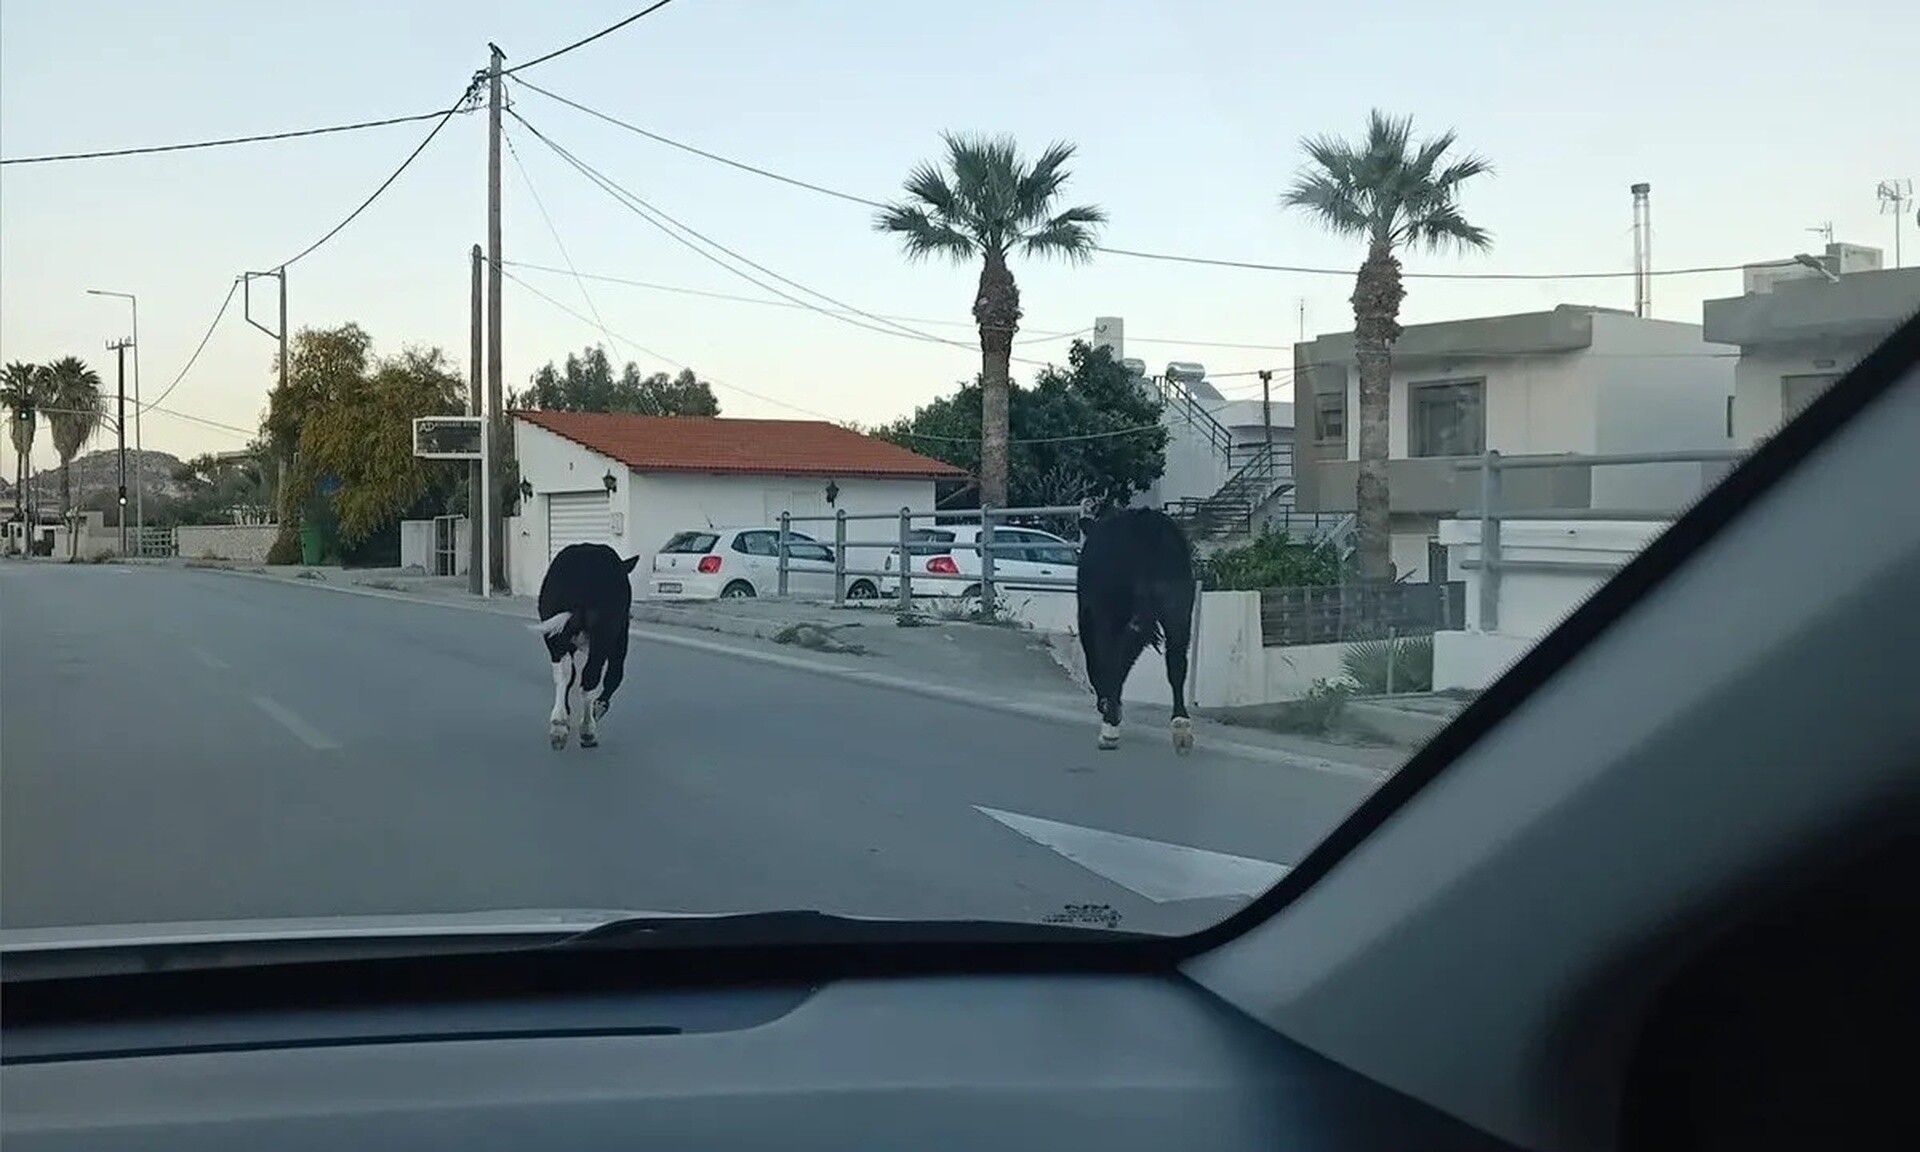 Περίεργο περιστατικό στη Ρόδο: Εμφανίστηκαν αγελάδες στην Λεωφόρο του νησιού